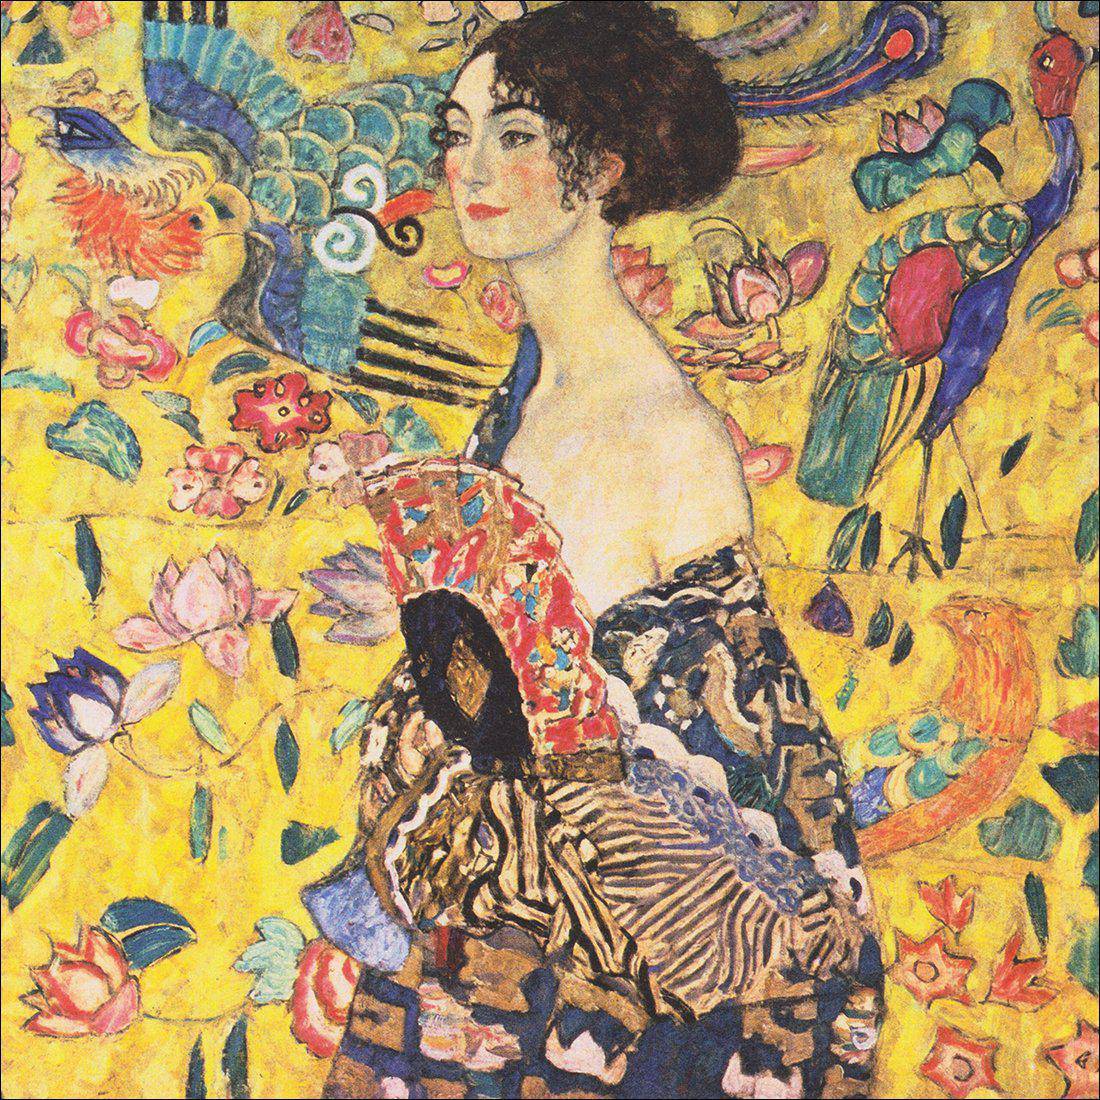 Lady With Fan - Gustav Klimt Canvas Art-Canvas-Wall Art Designs-30x30cm-Canvas - No Frame-Wall Art Designs